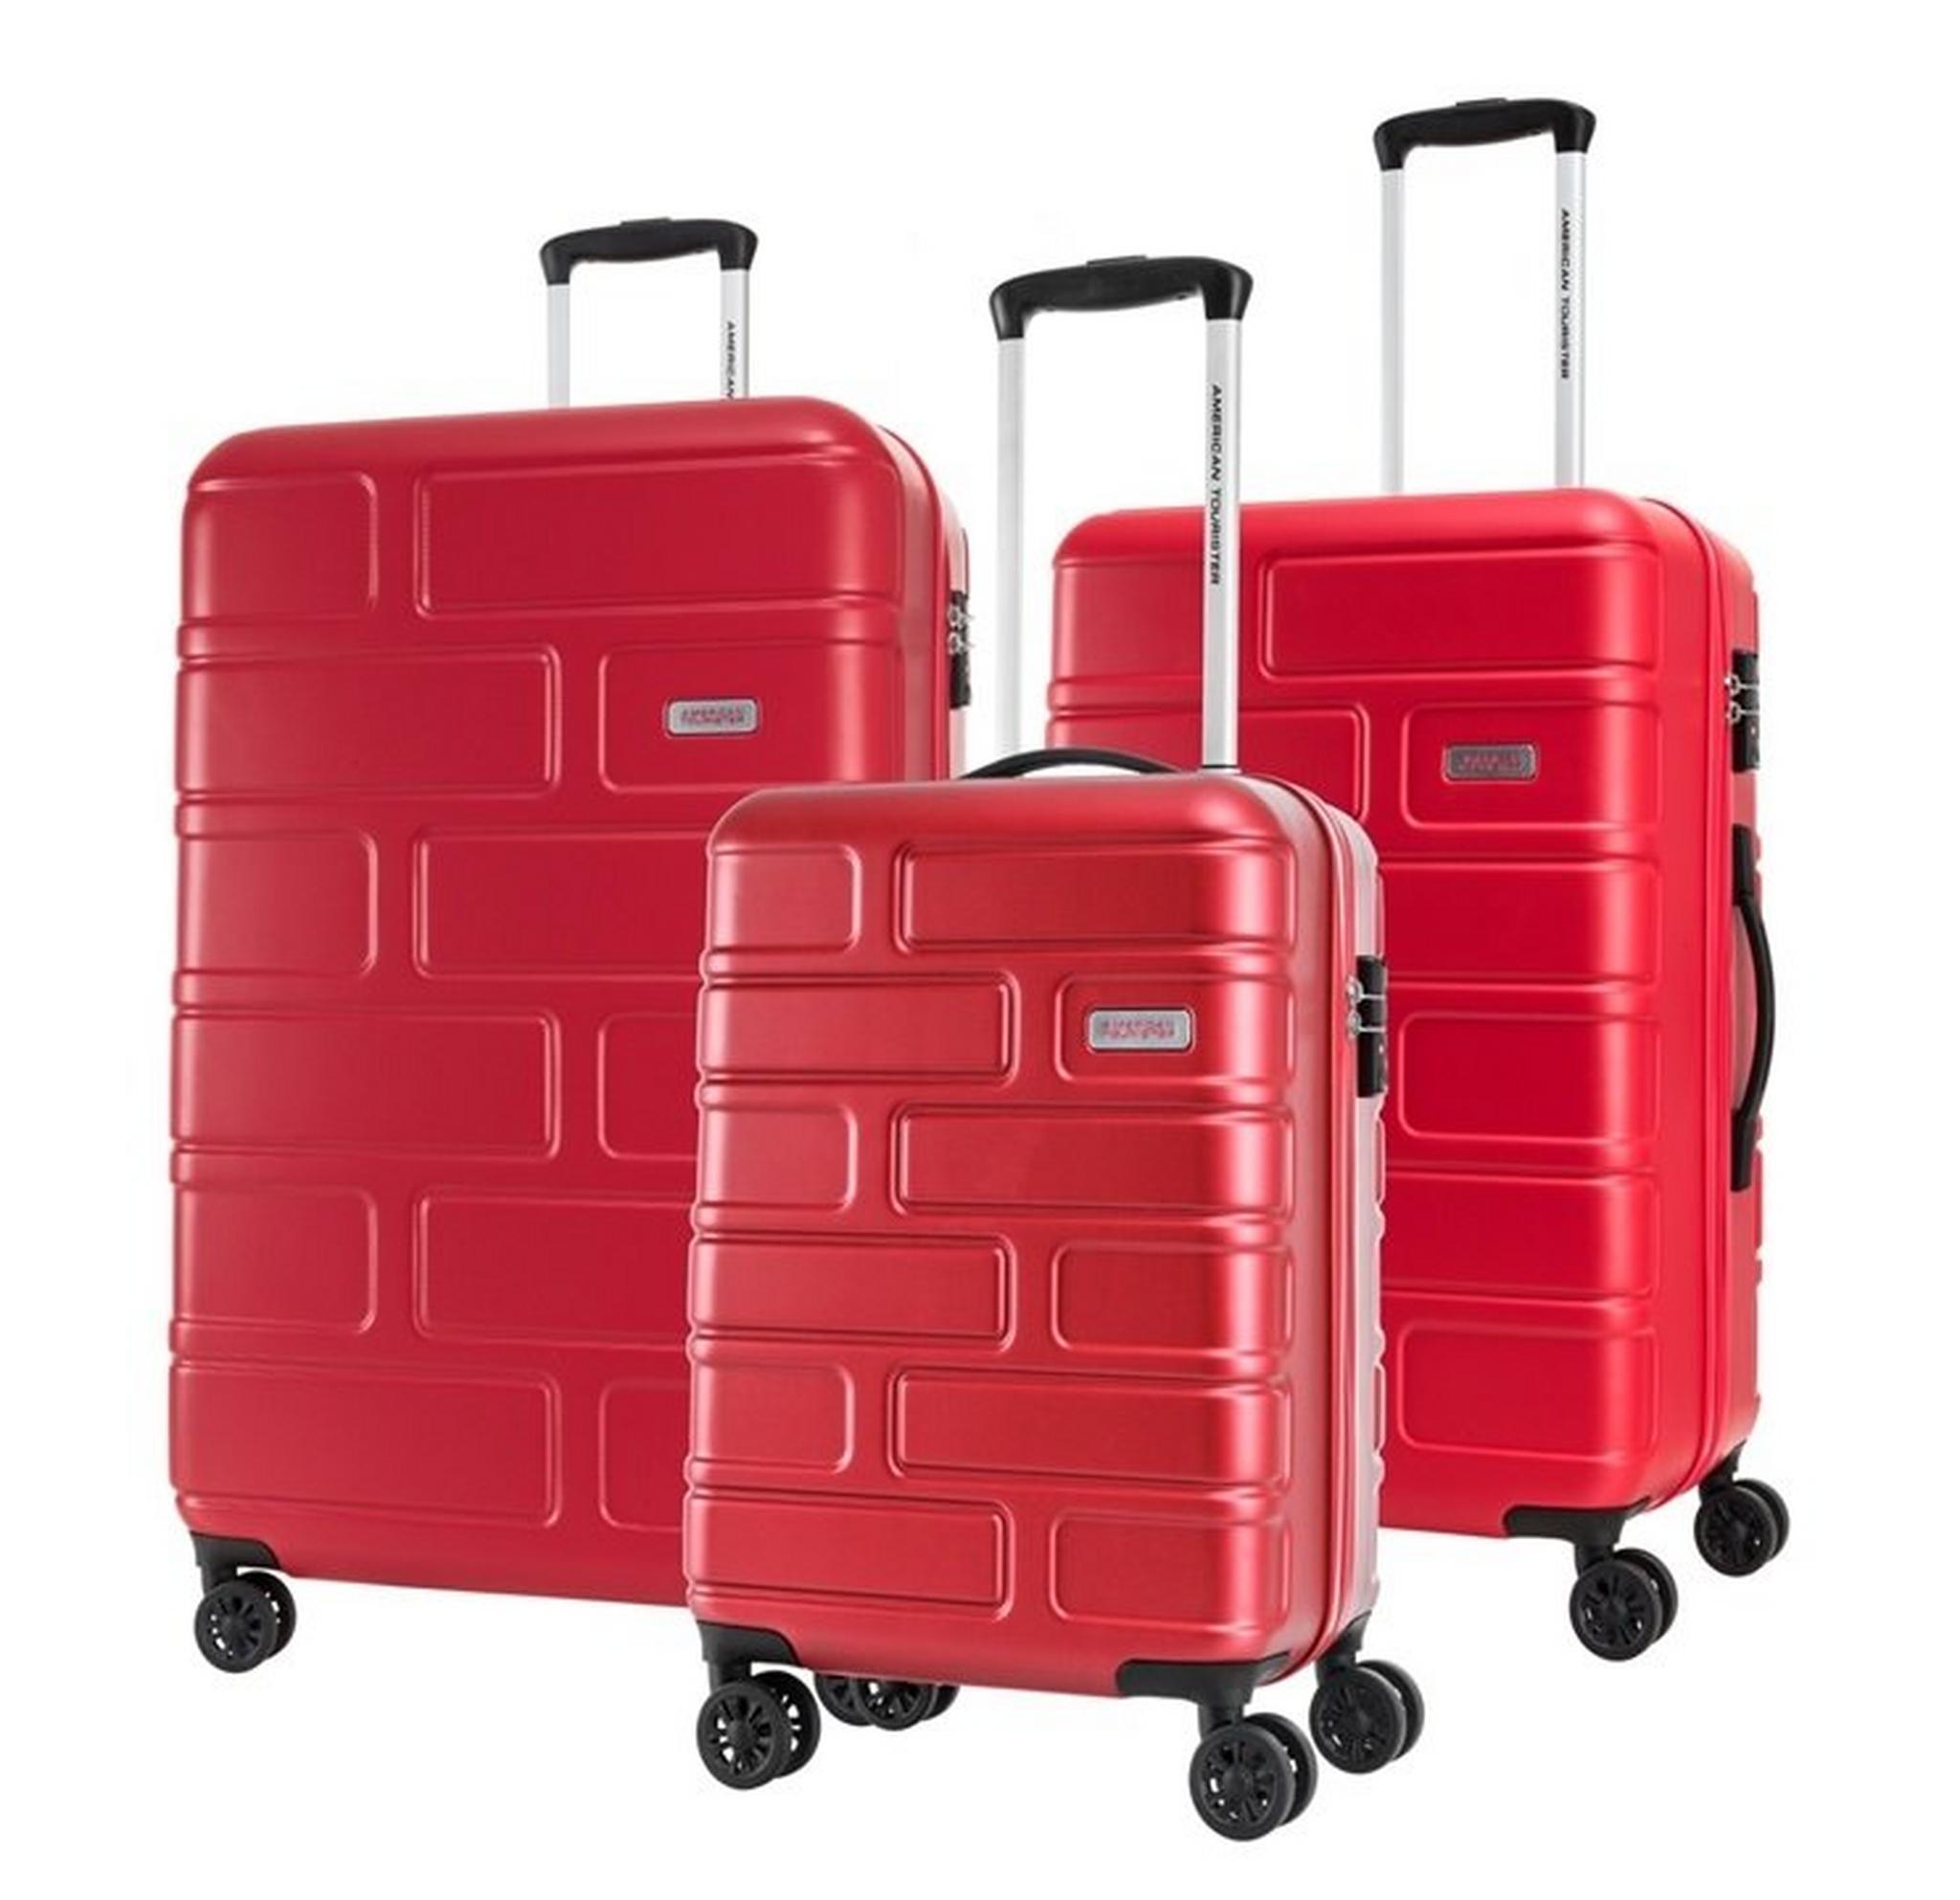 حقائب بريكلين الصلبة من أميريكان توريستر - ٣ قطع - أحمر